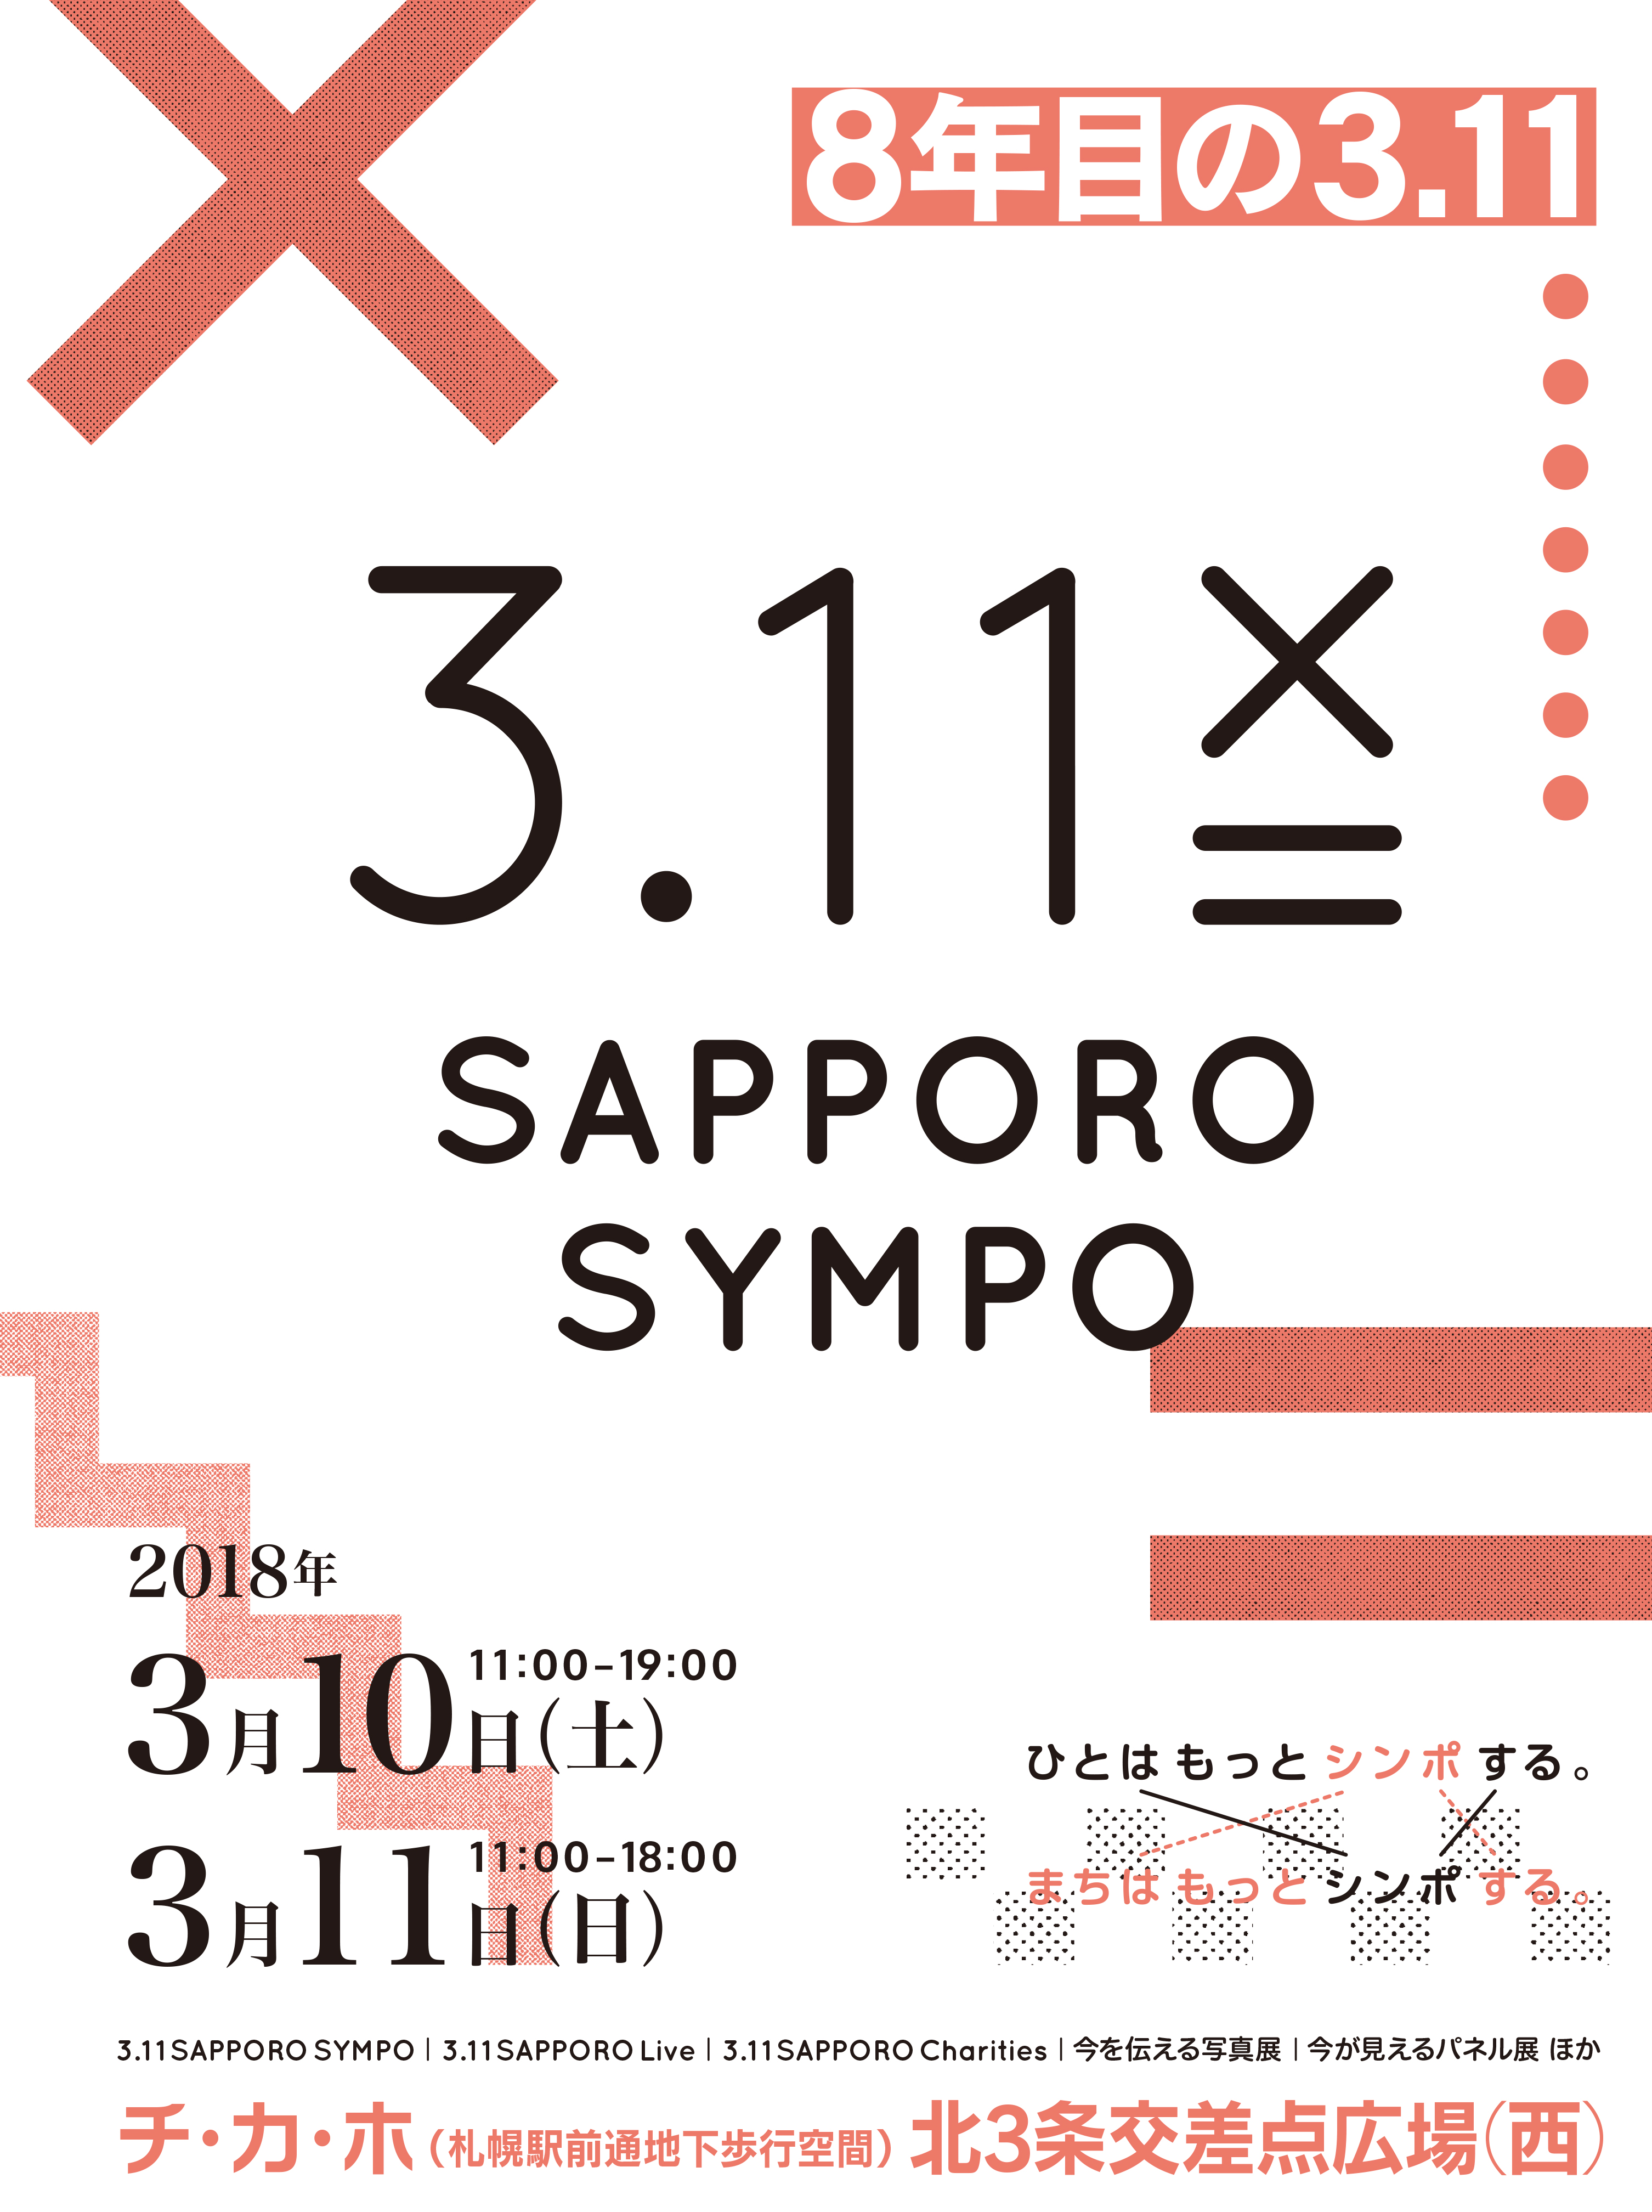 3.11 Sapporo Sympo『8年目の3.11』